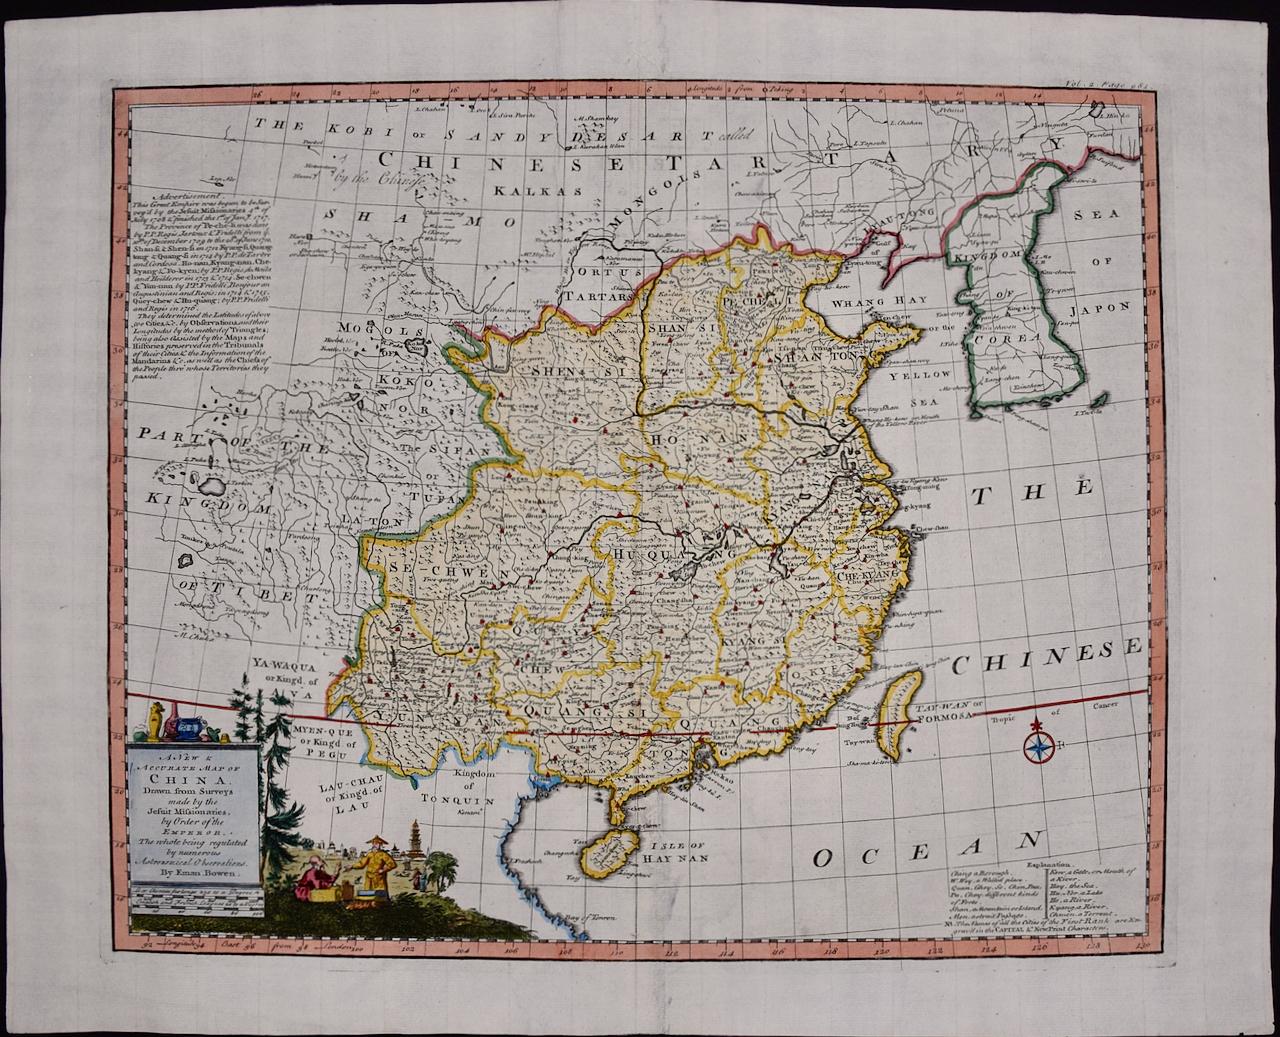 Emanuel Bowen Print – China: Eine handkolorierte Karte aus dem 18. Jahrhundert von E. Bowen